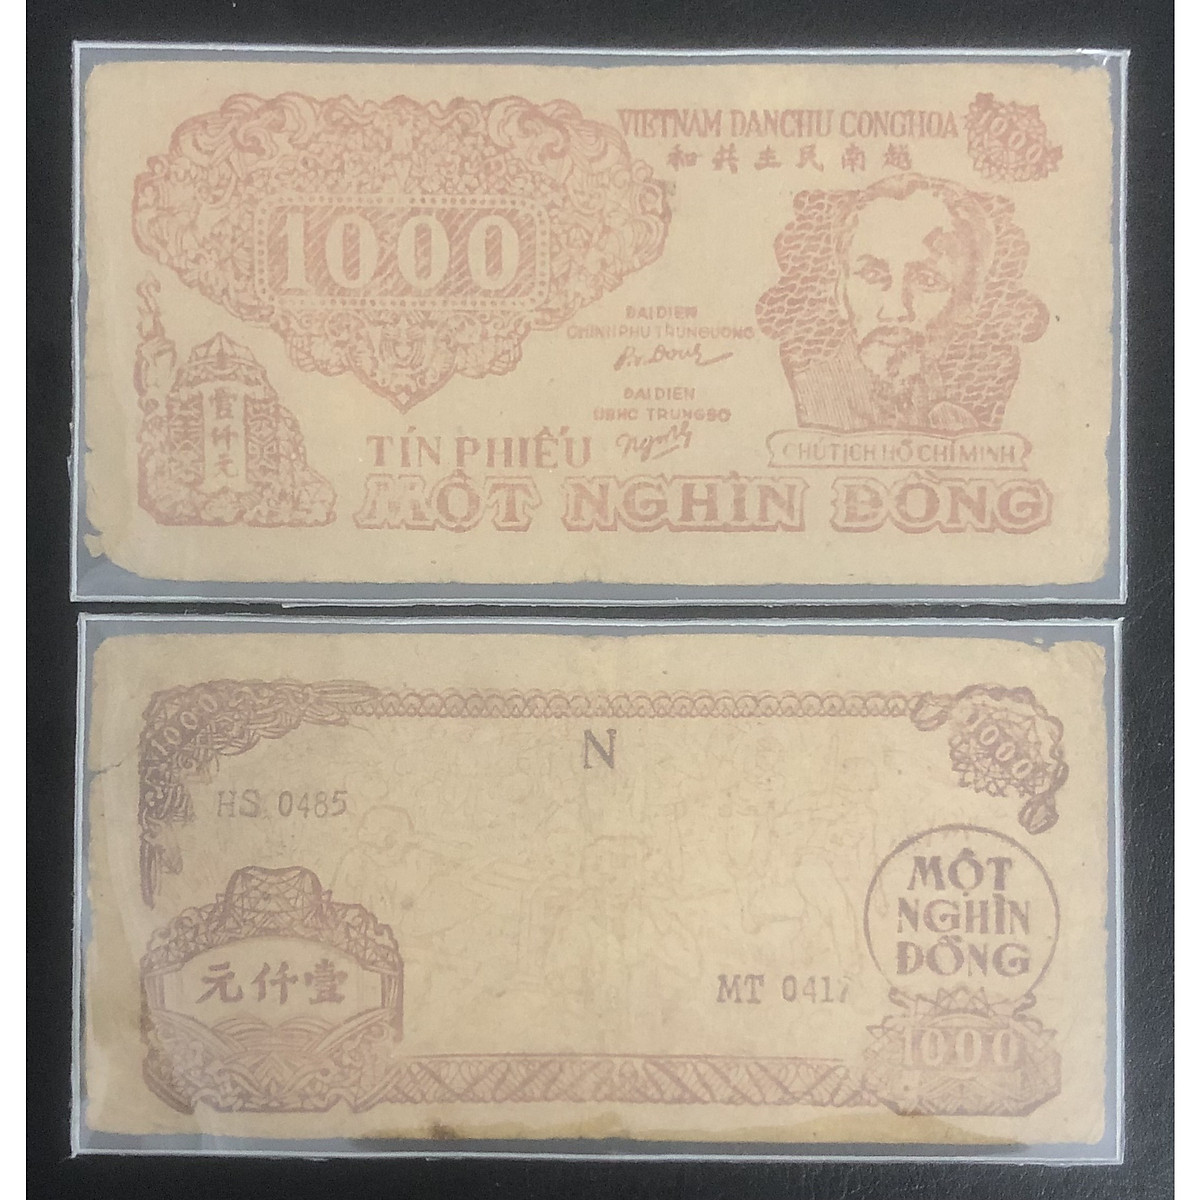 Tiền Cổ Việt Nam tiêu dùng khu vực miền Trung, mệnh giá 1000 đồng tín phiếu chụ Hồ, tặng kèm phơi nilong bảo quản